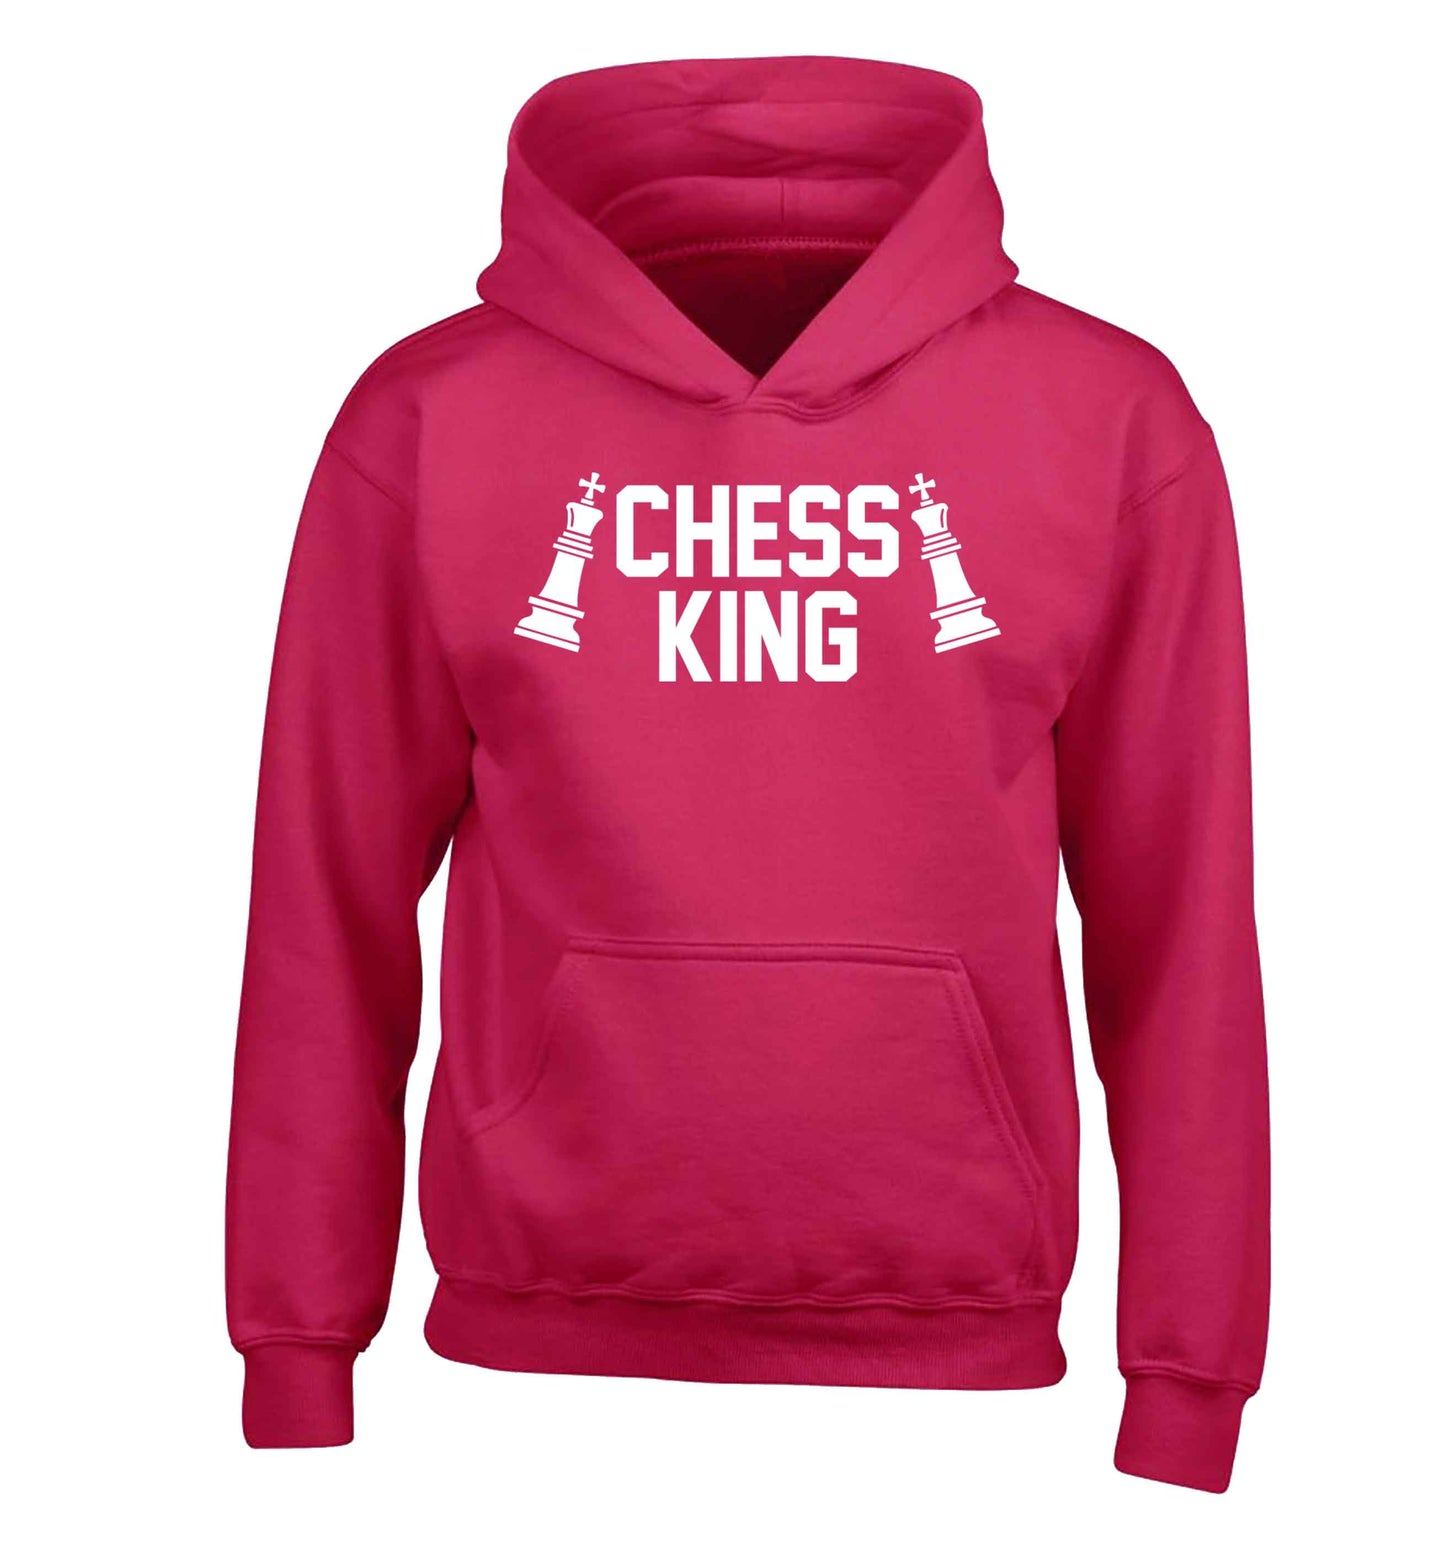 Chess king children's pink hoodie 12-13 Years